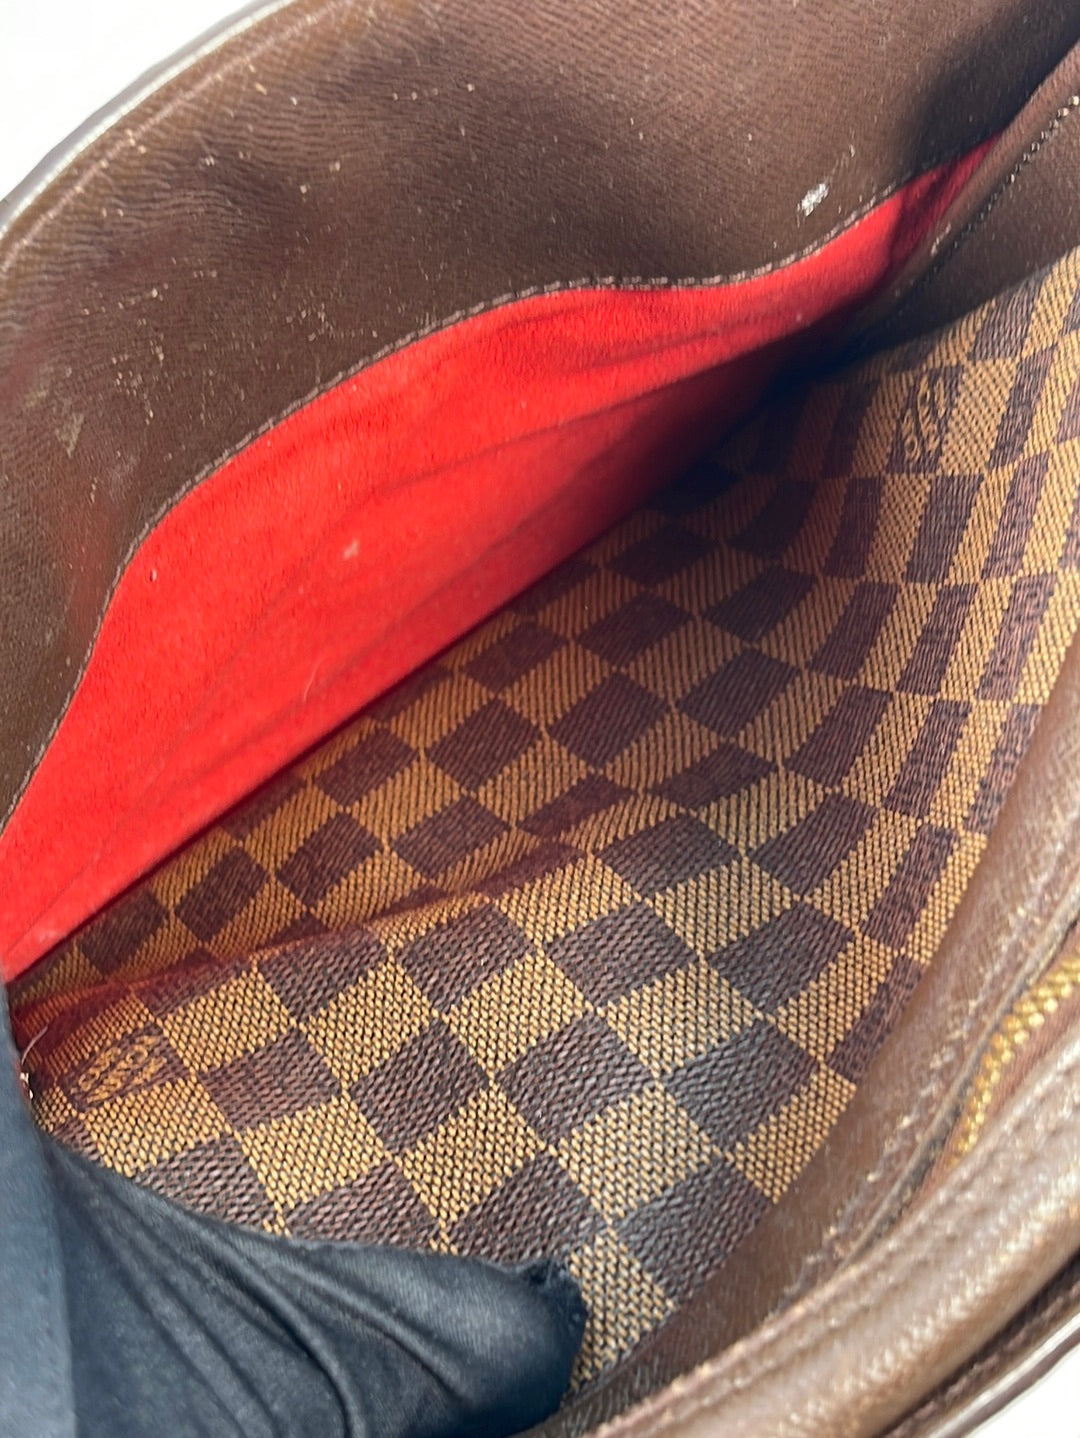 372. Louis Vuitton Damier Ebene Canvas Triana Bag - April 2019